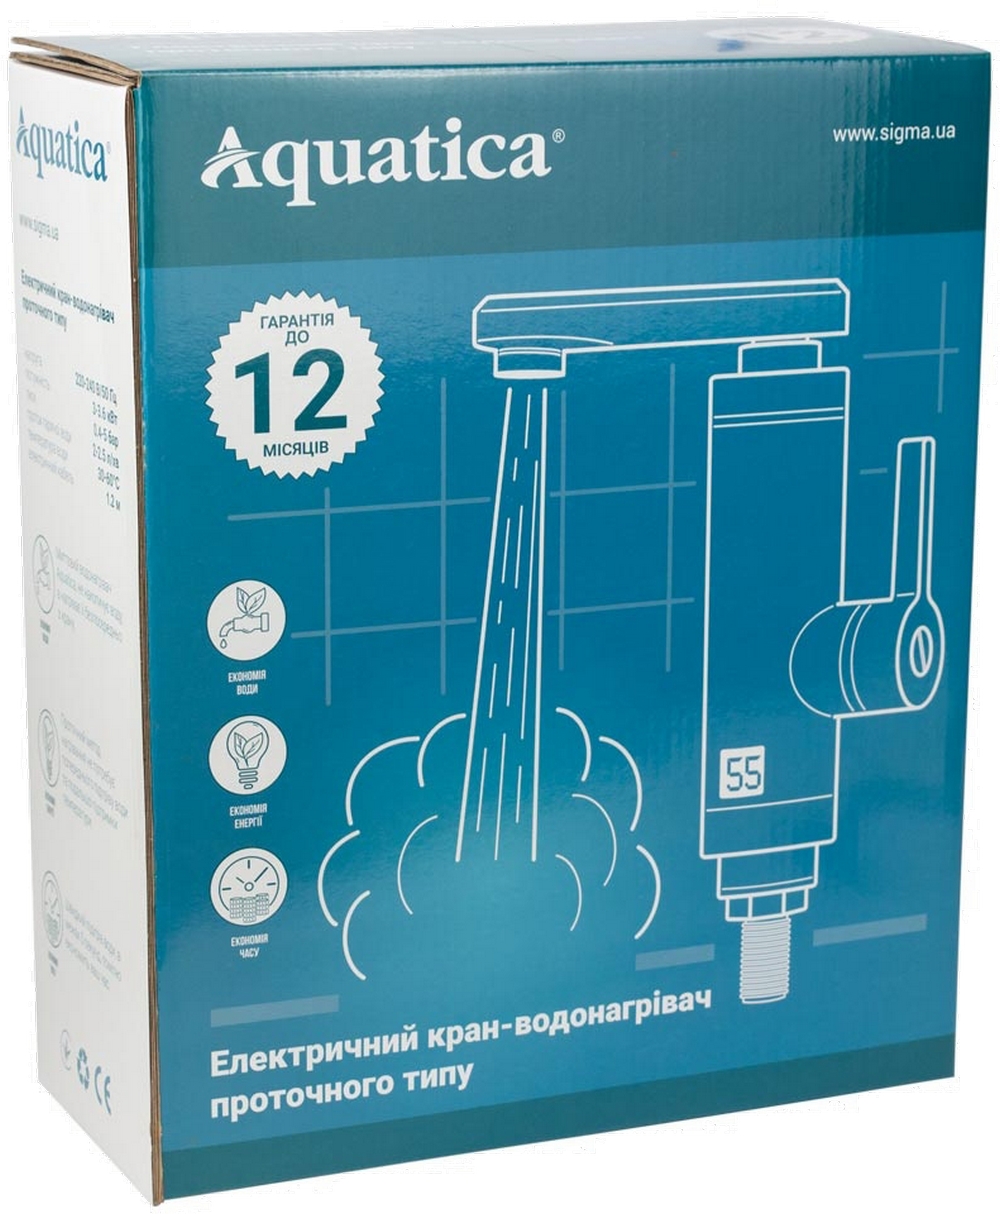 Проточный водонагреватель Aquatica JZ-7C141W цена 1513.00 грн - фотография 2